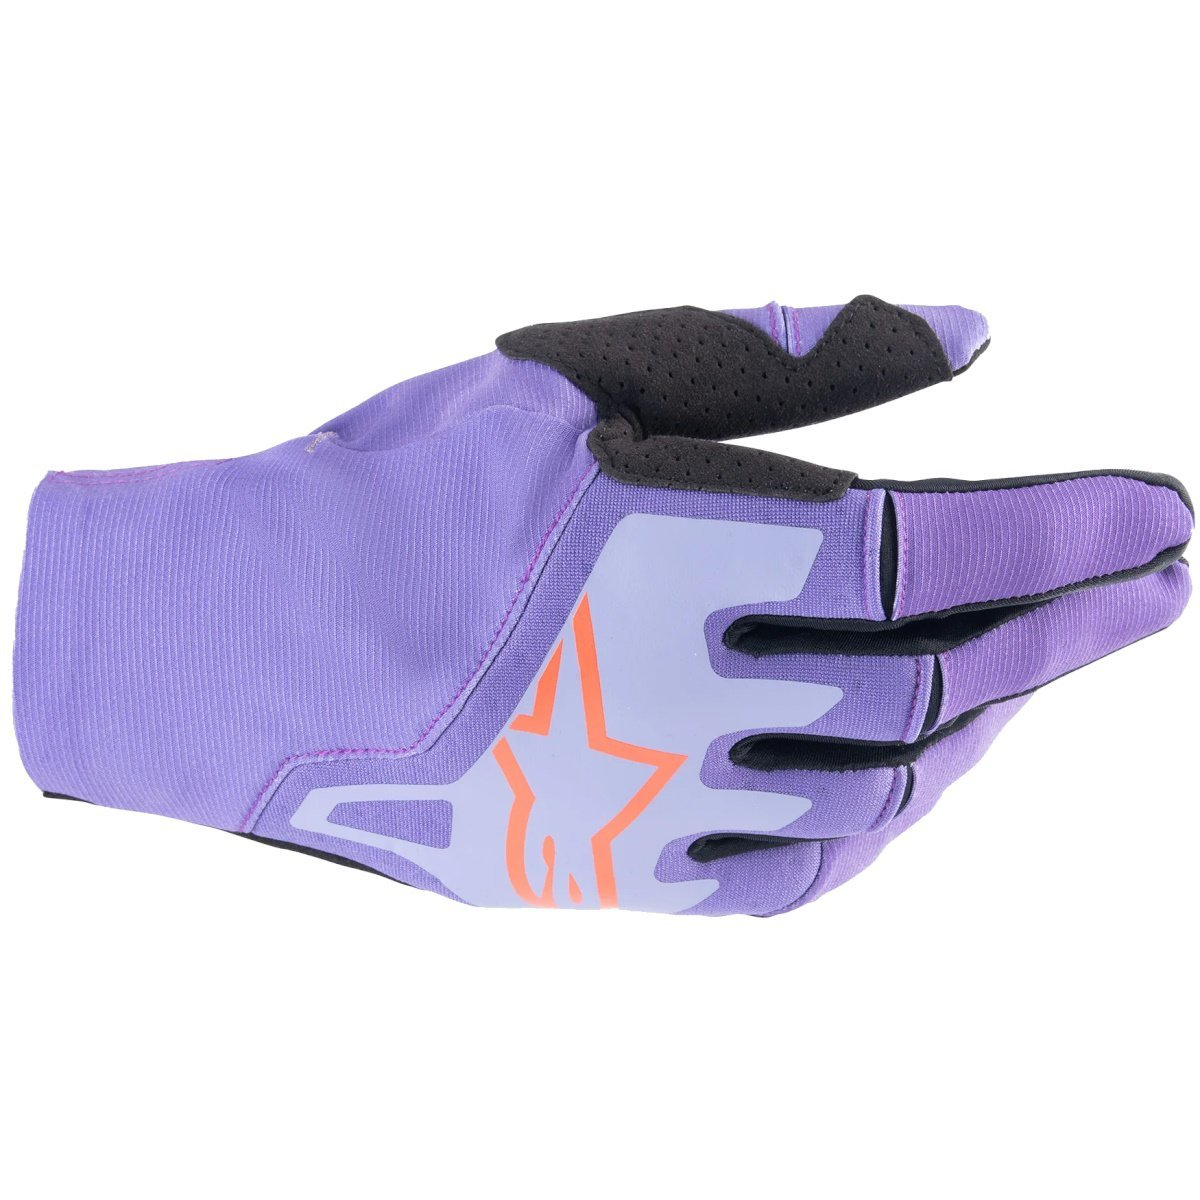 MX rukavice Alpinestars TECHSTAR fialová/černá M